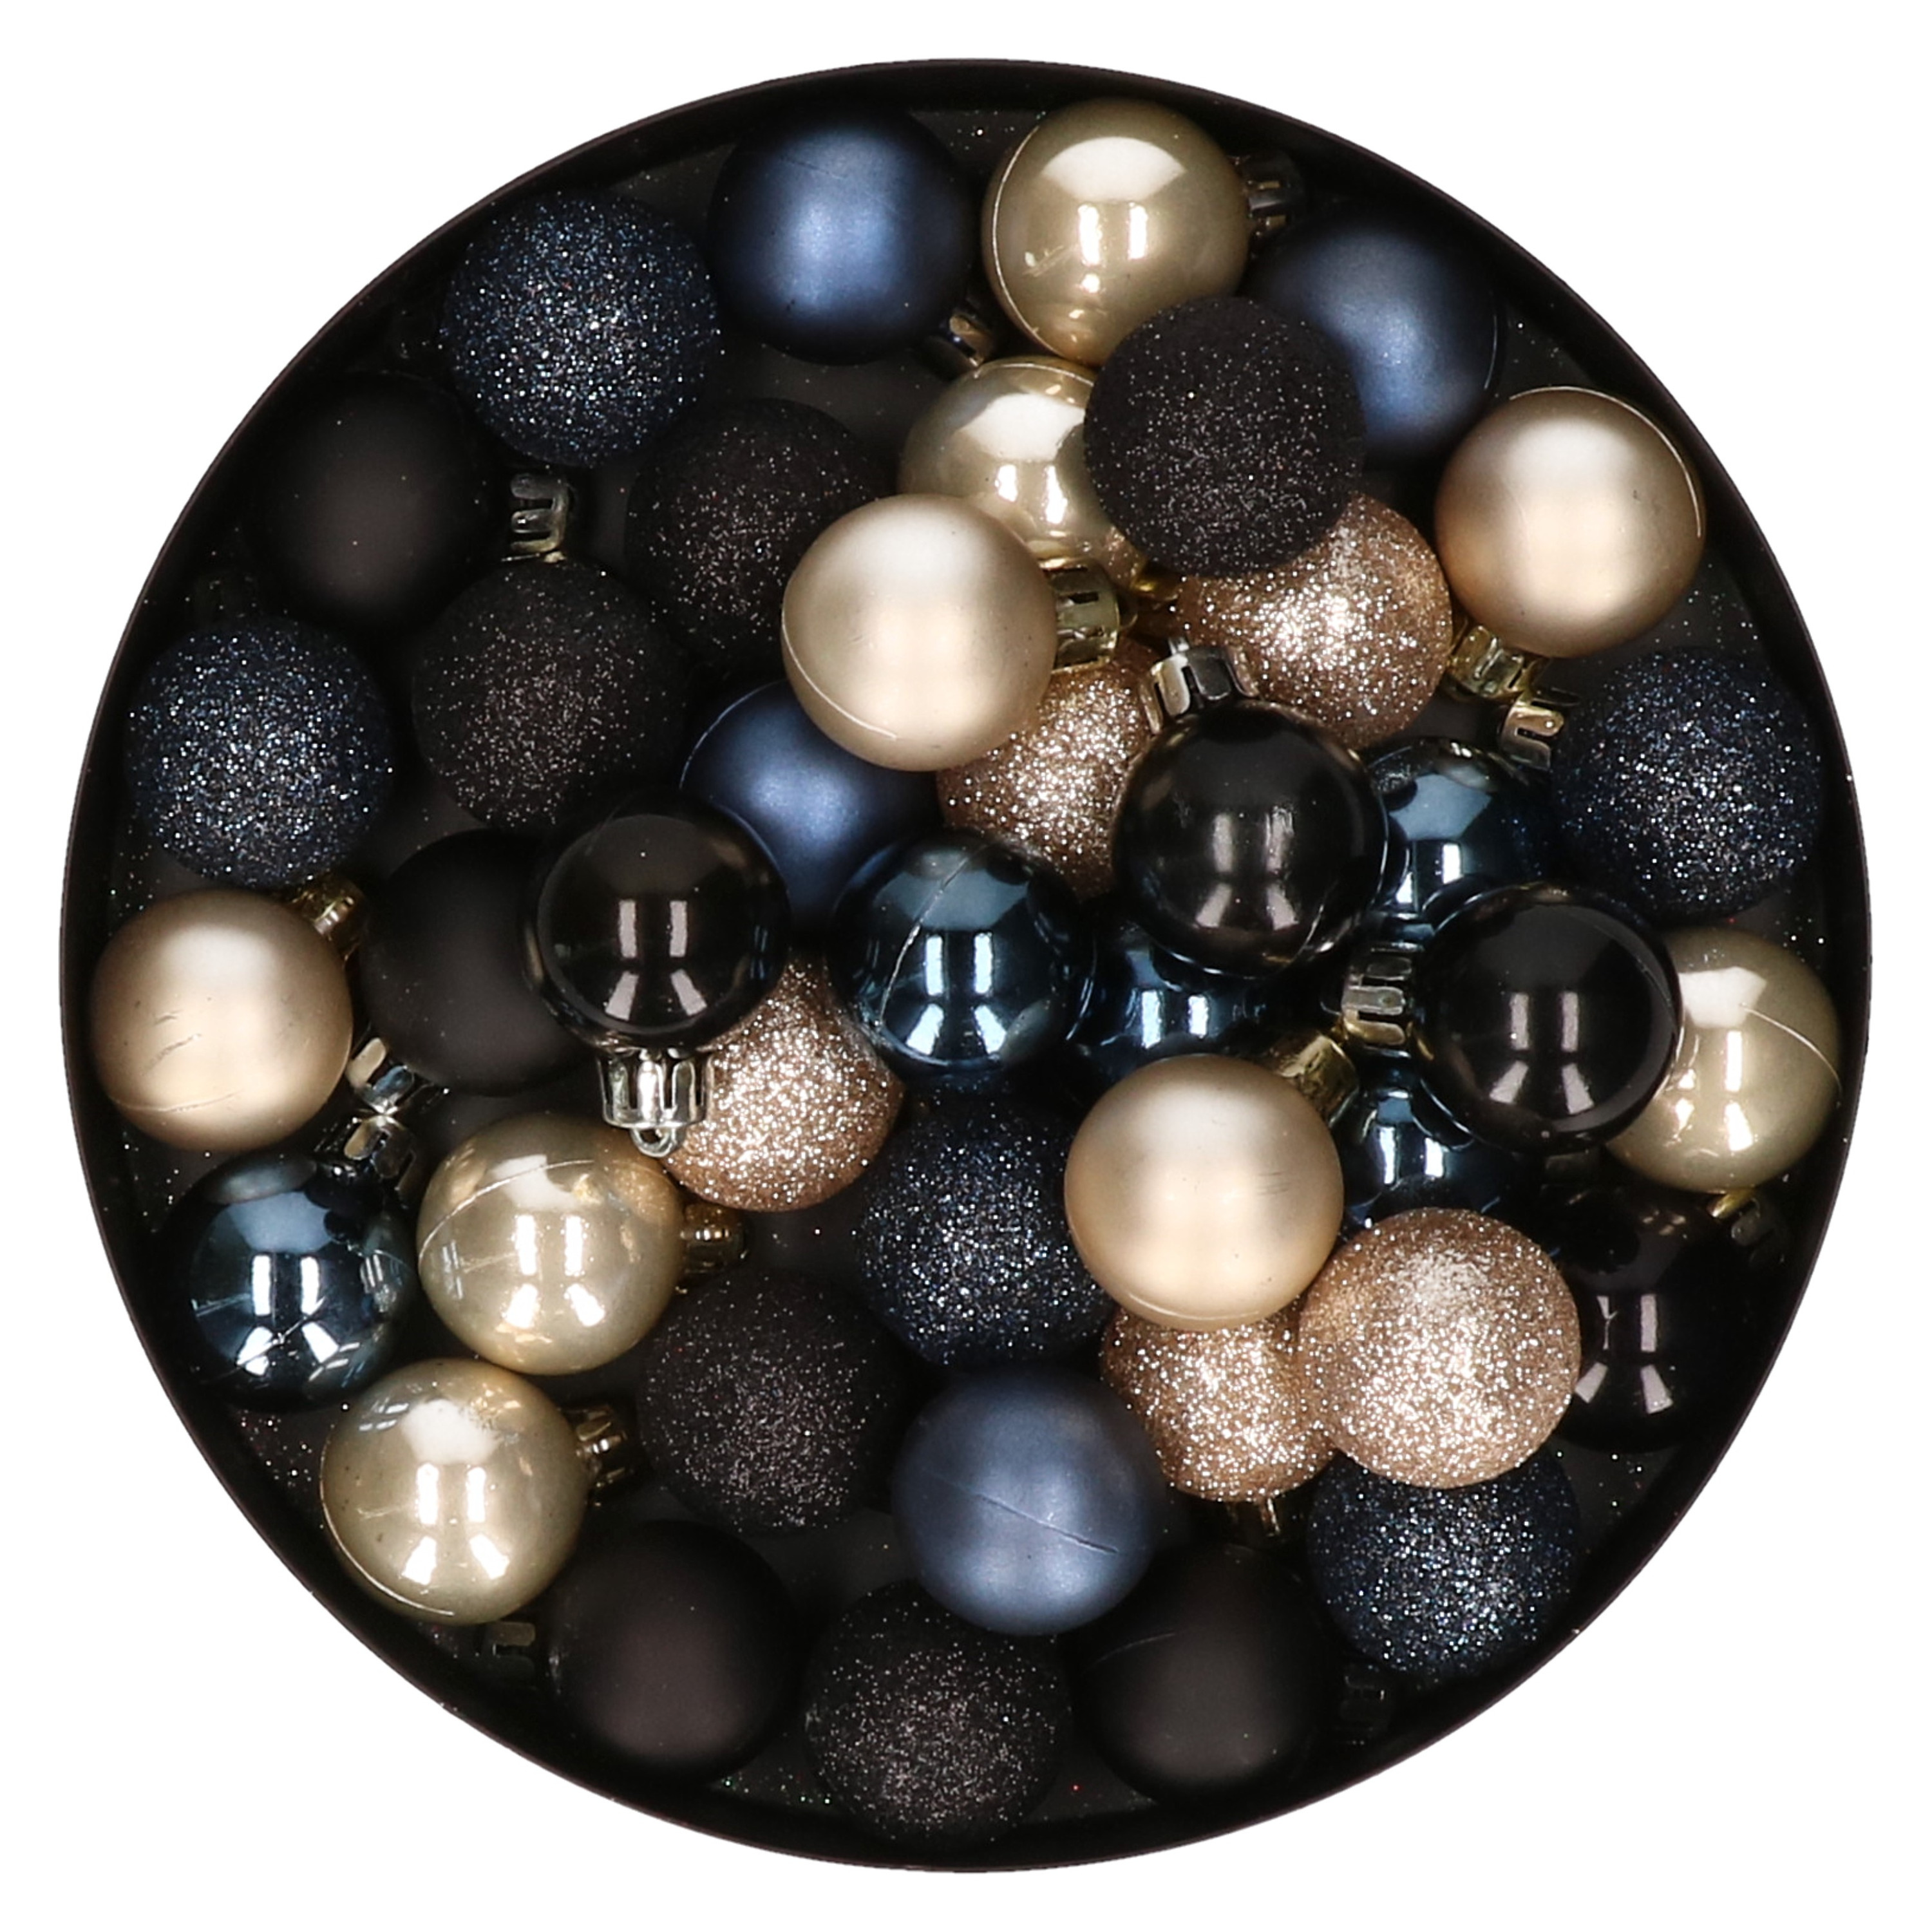 42x stuks kunststof kerstballen donkerblauw, champagne en zwart mix 3 cm